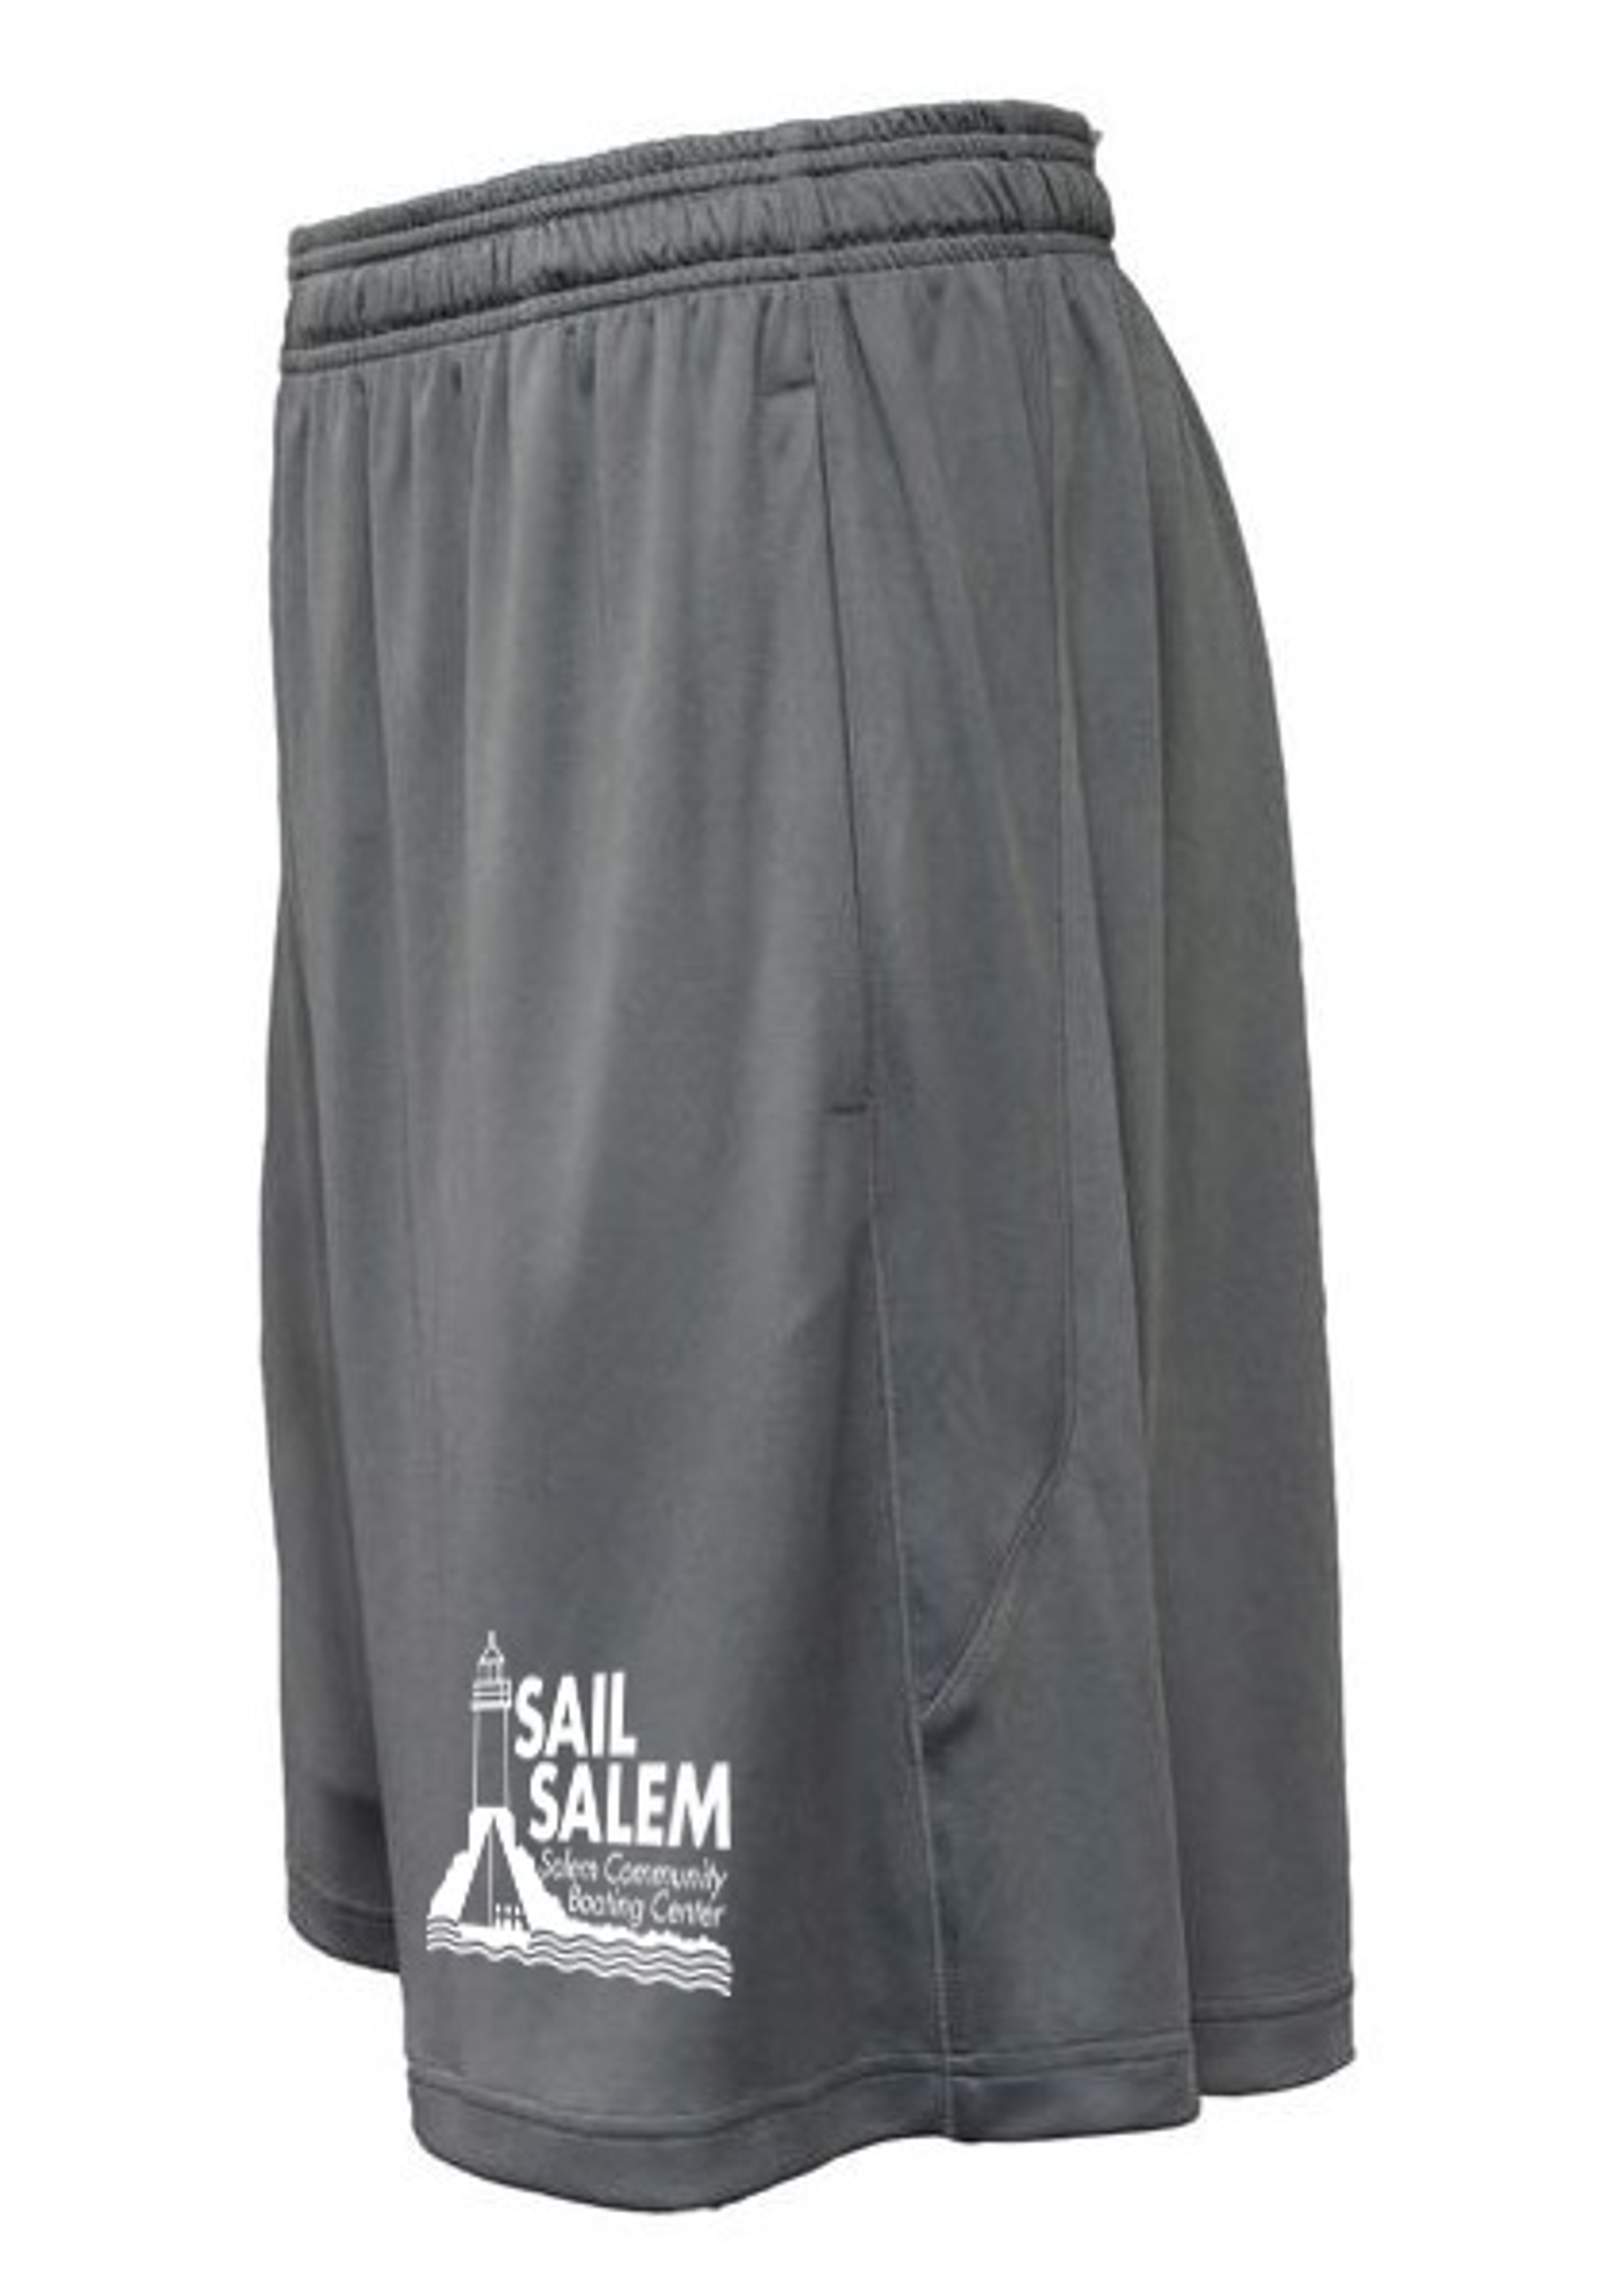 Sail Salem Arc Athletic Shorts